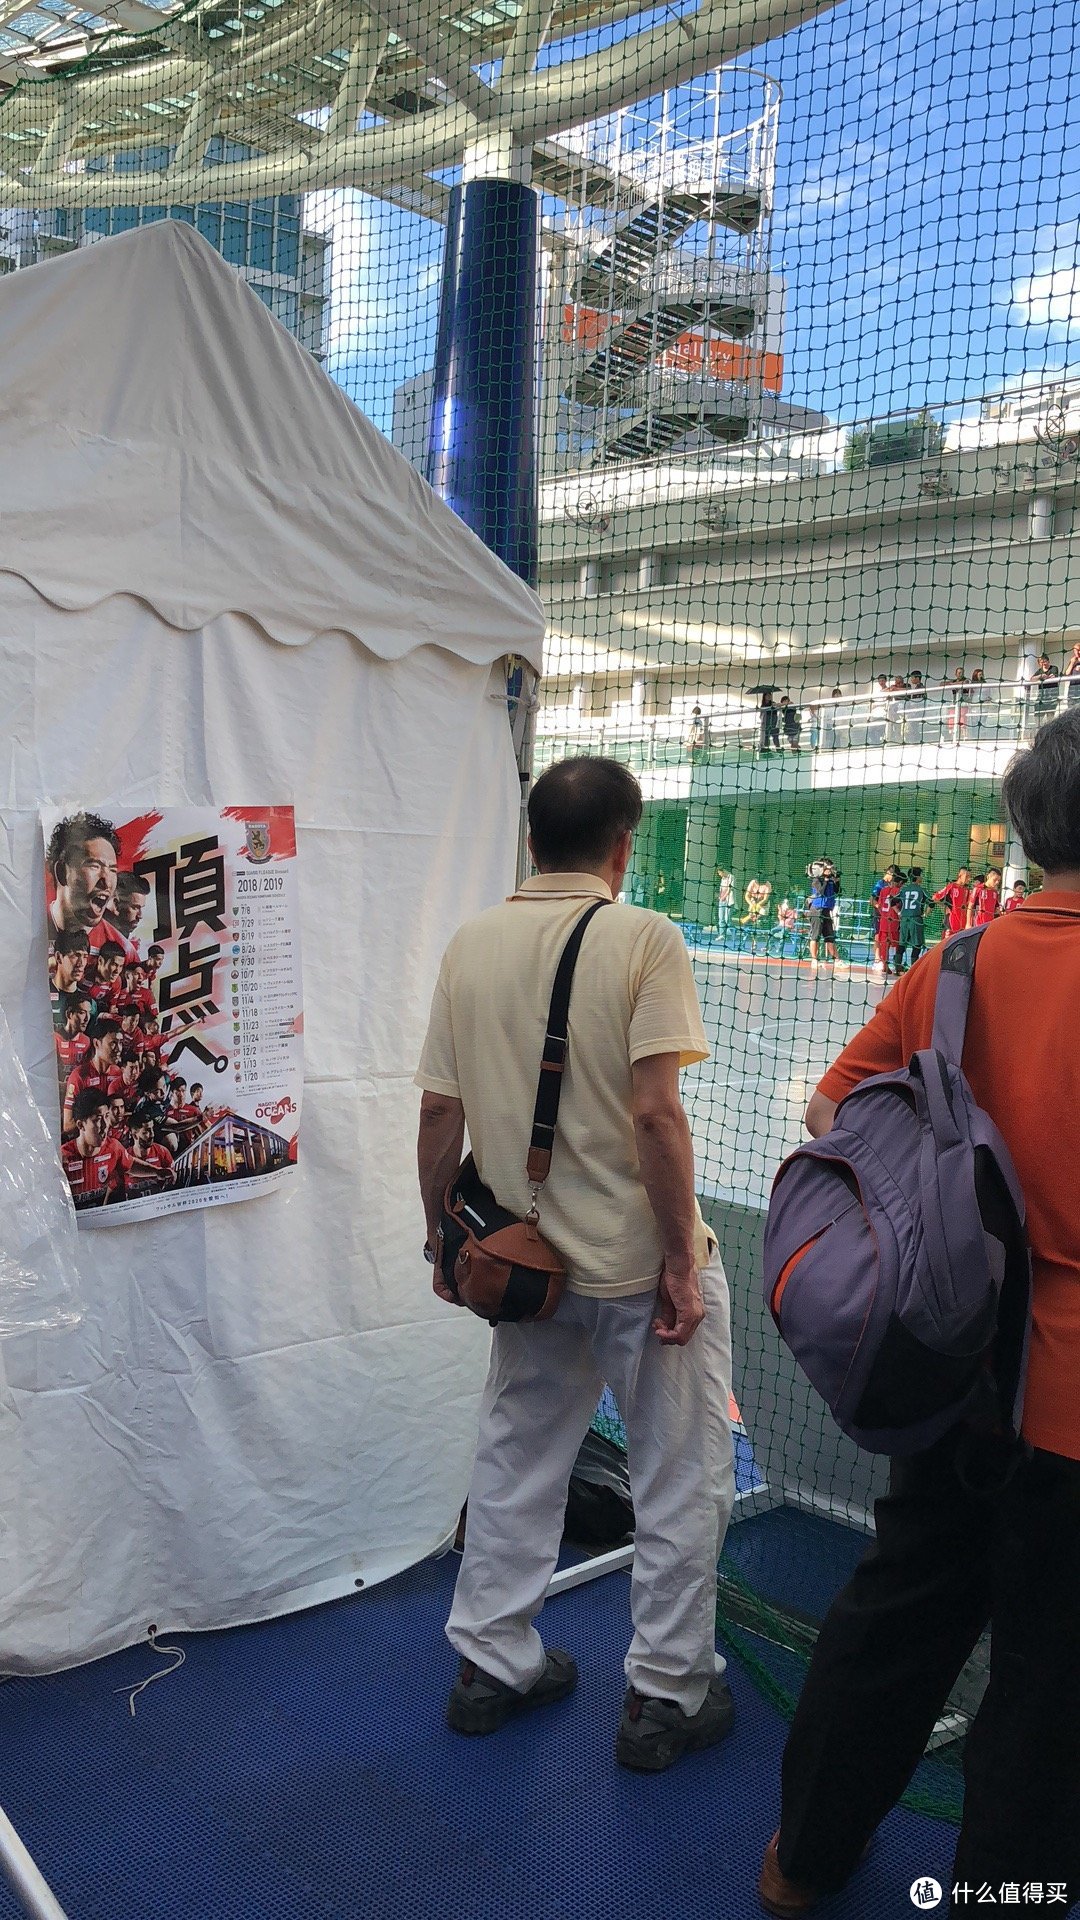 赛场上挥洒汗水的少年，和围观的群众。我们看了半场比赛，不得不说，日本的足球水平比我国还是高出不少的。